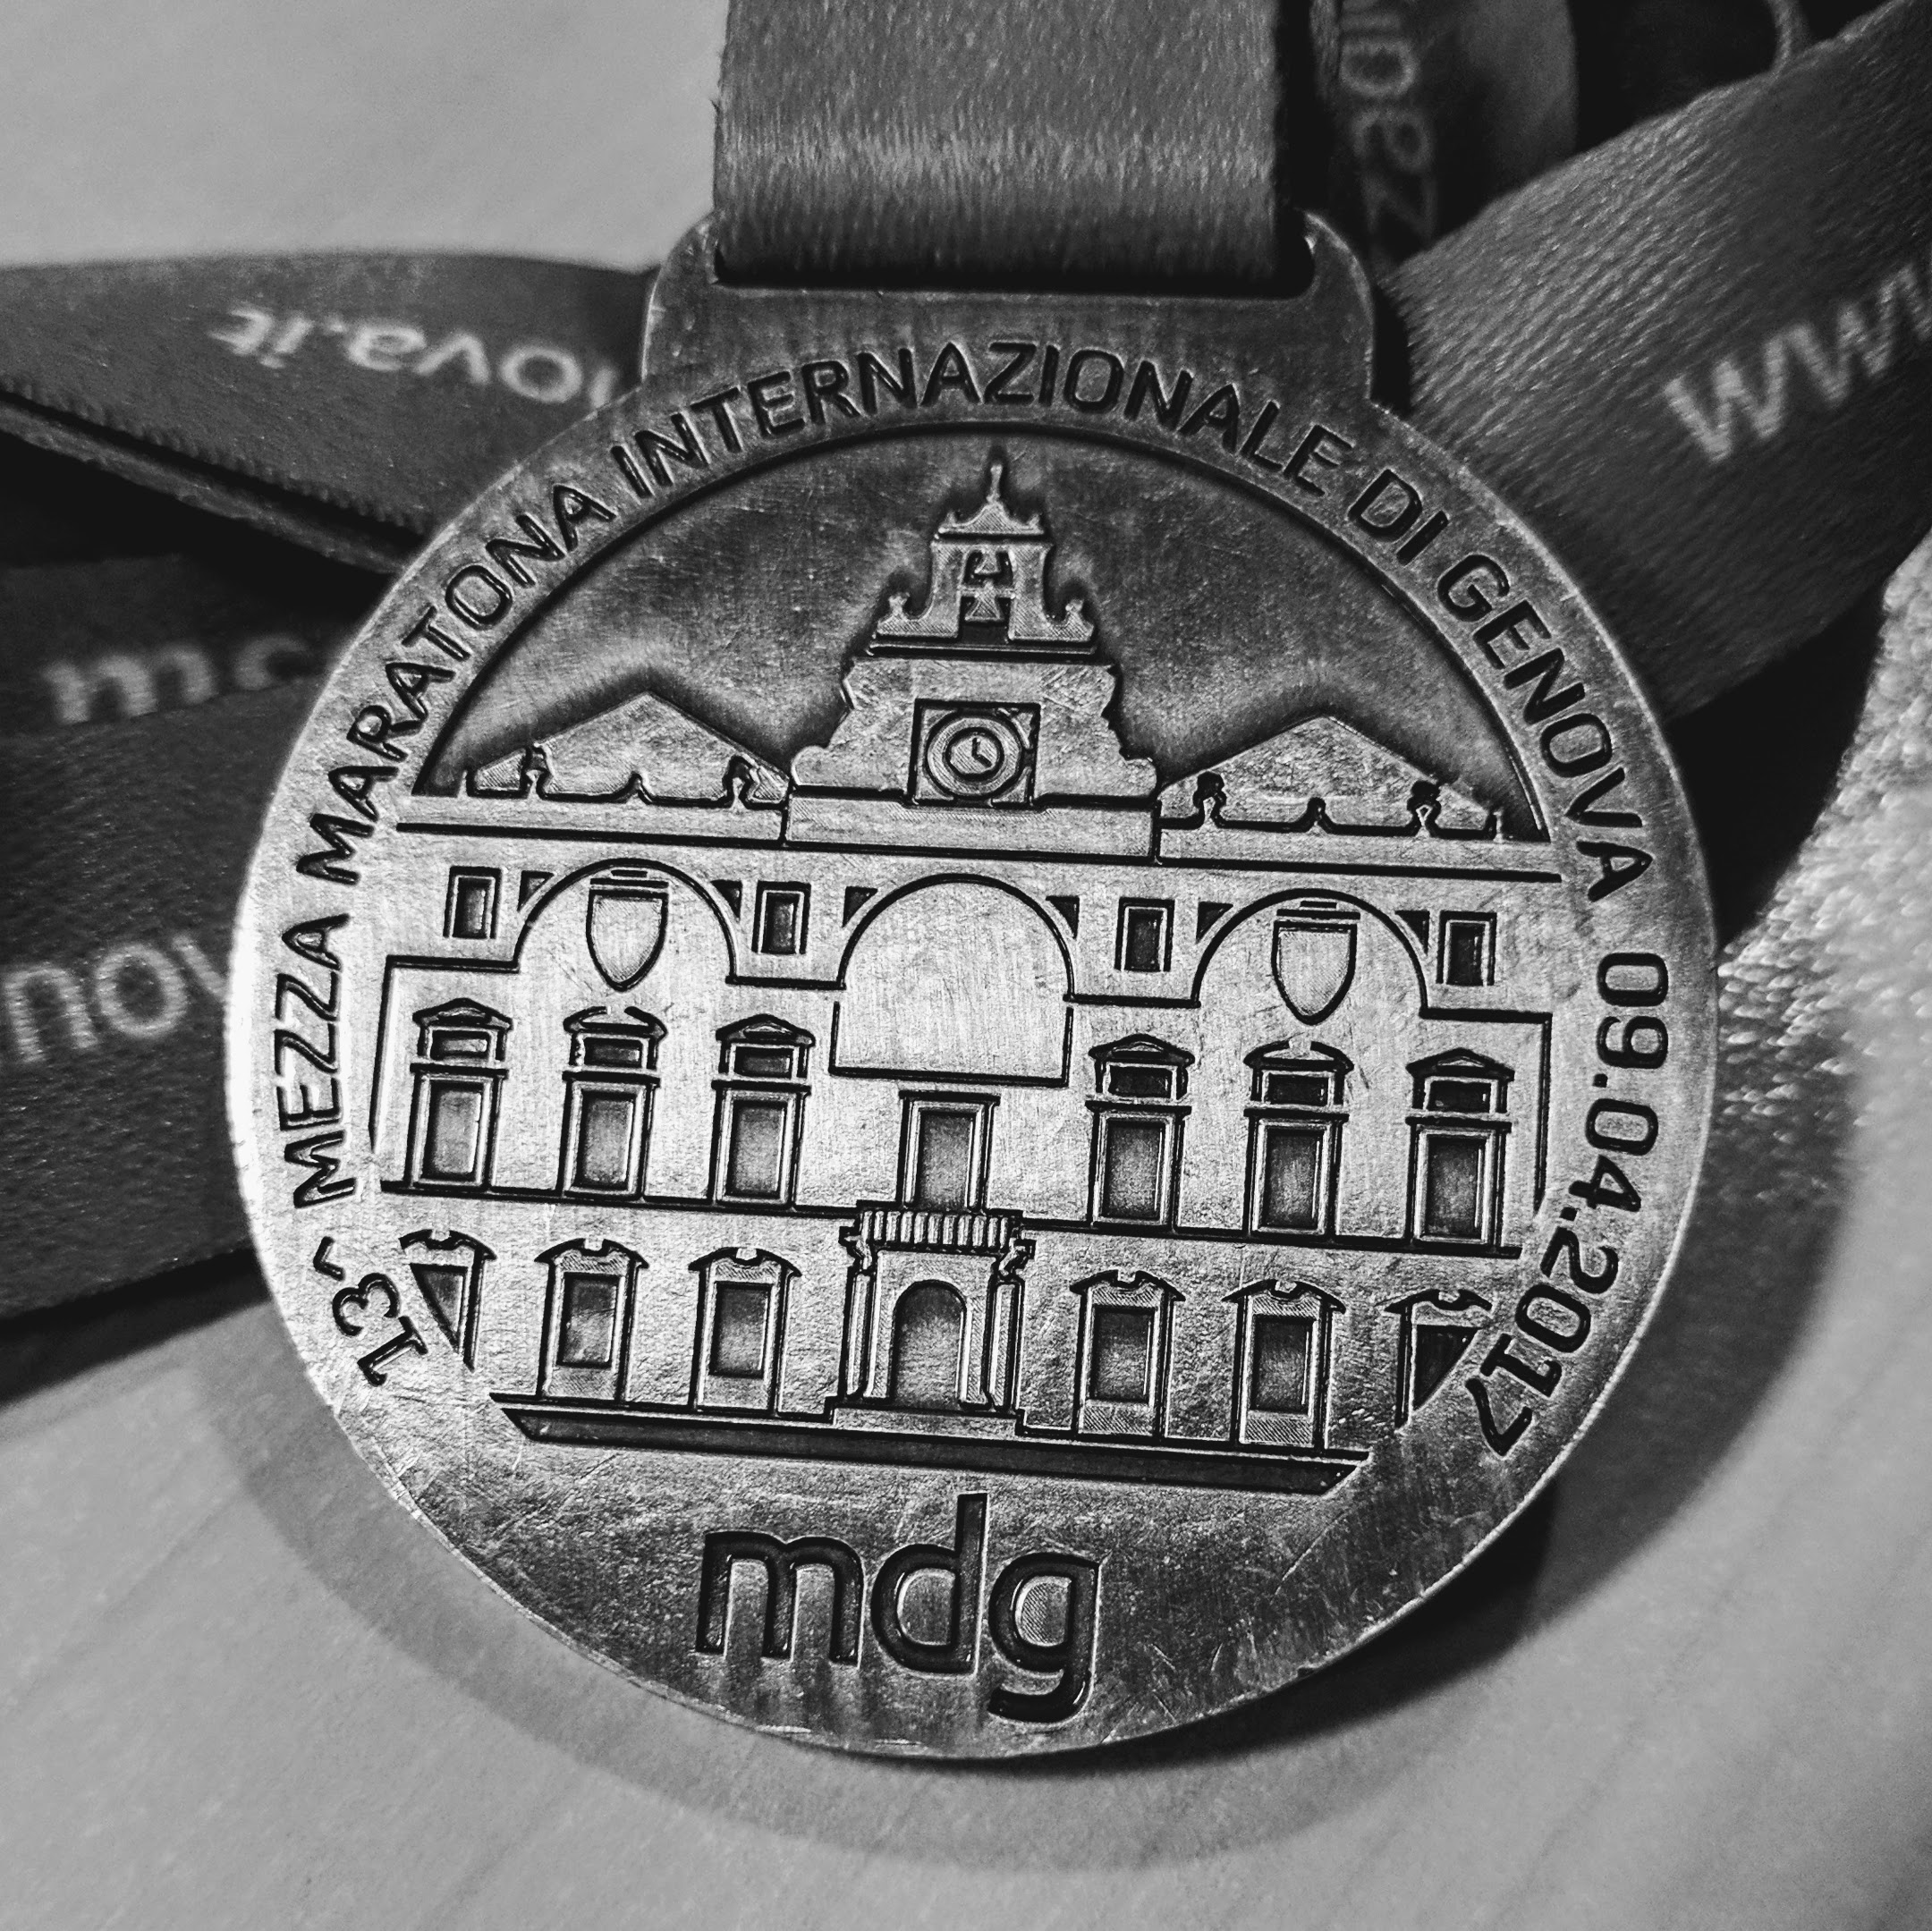 13a Mezza Maratona di Genova